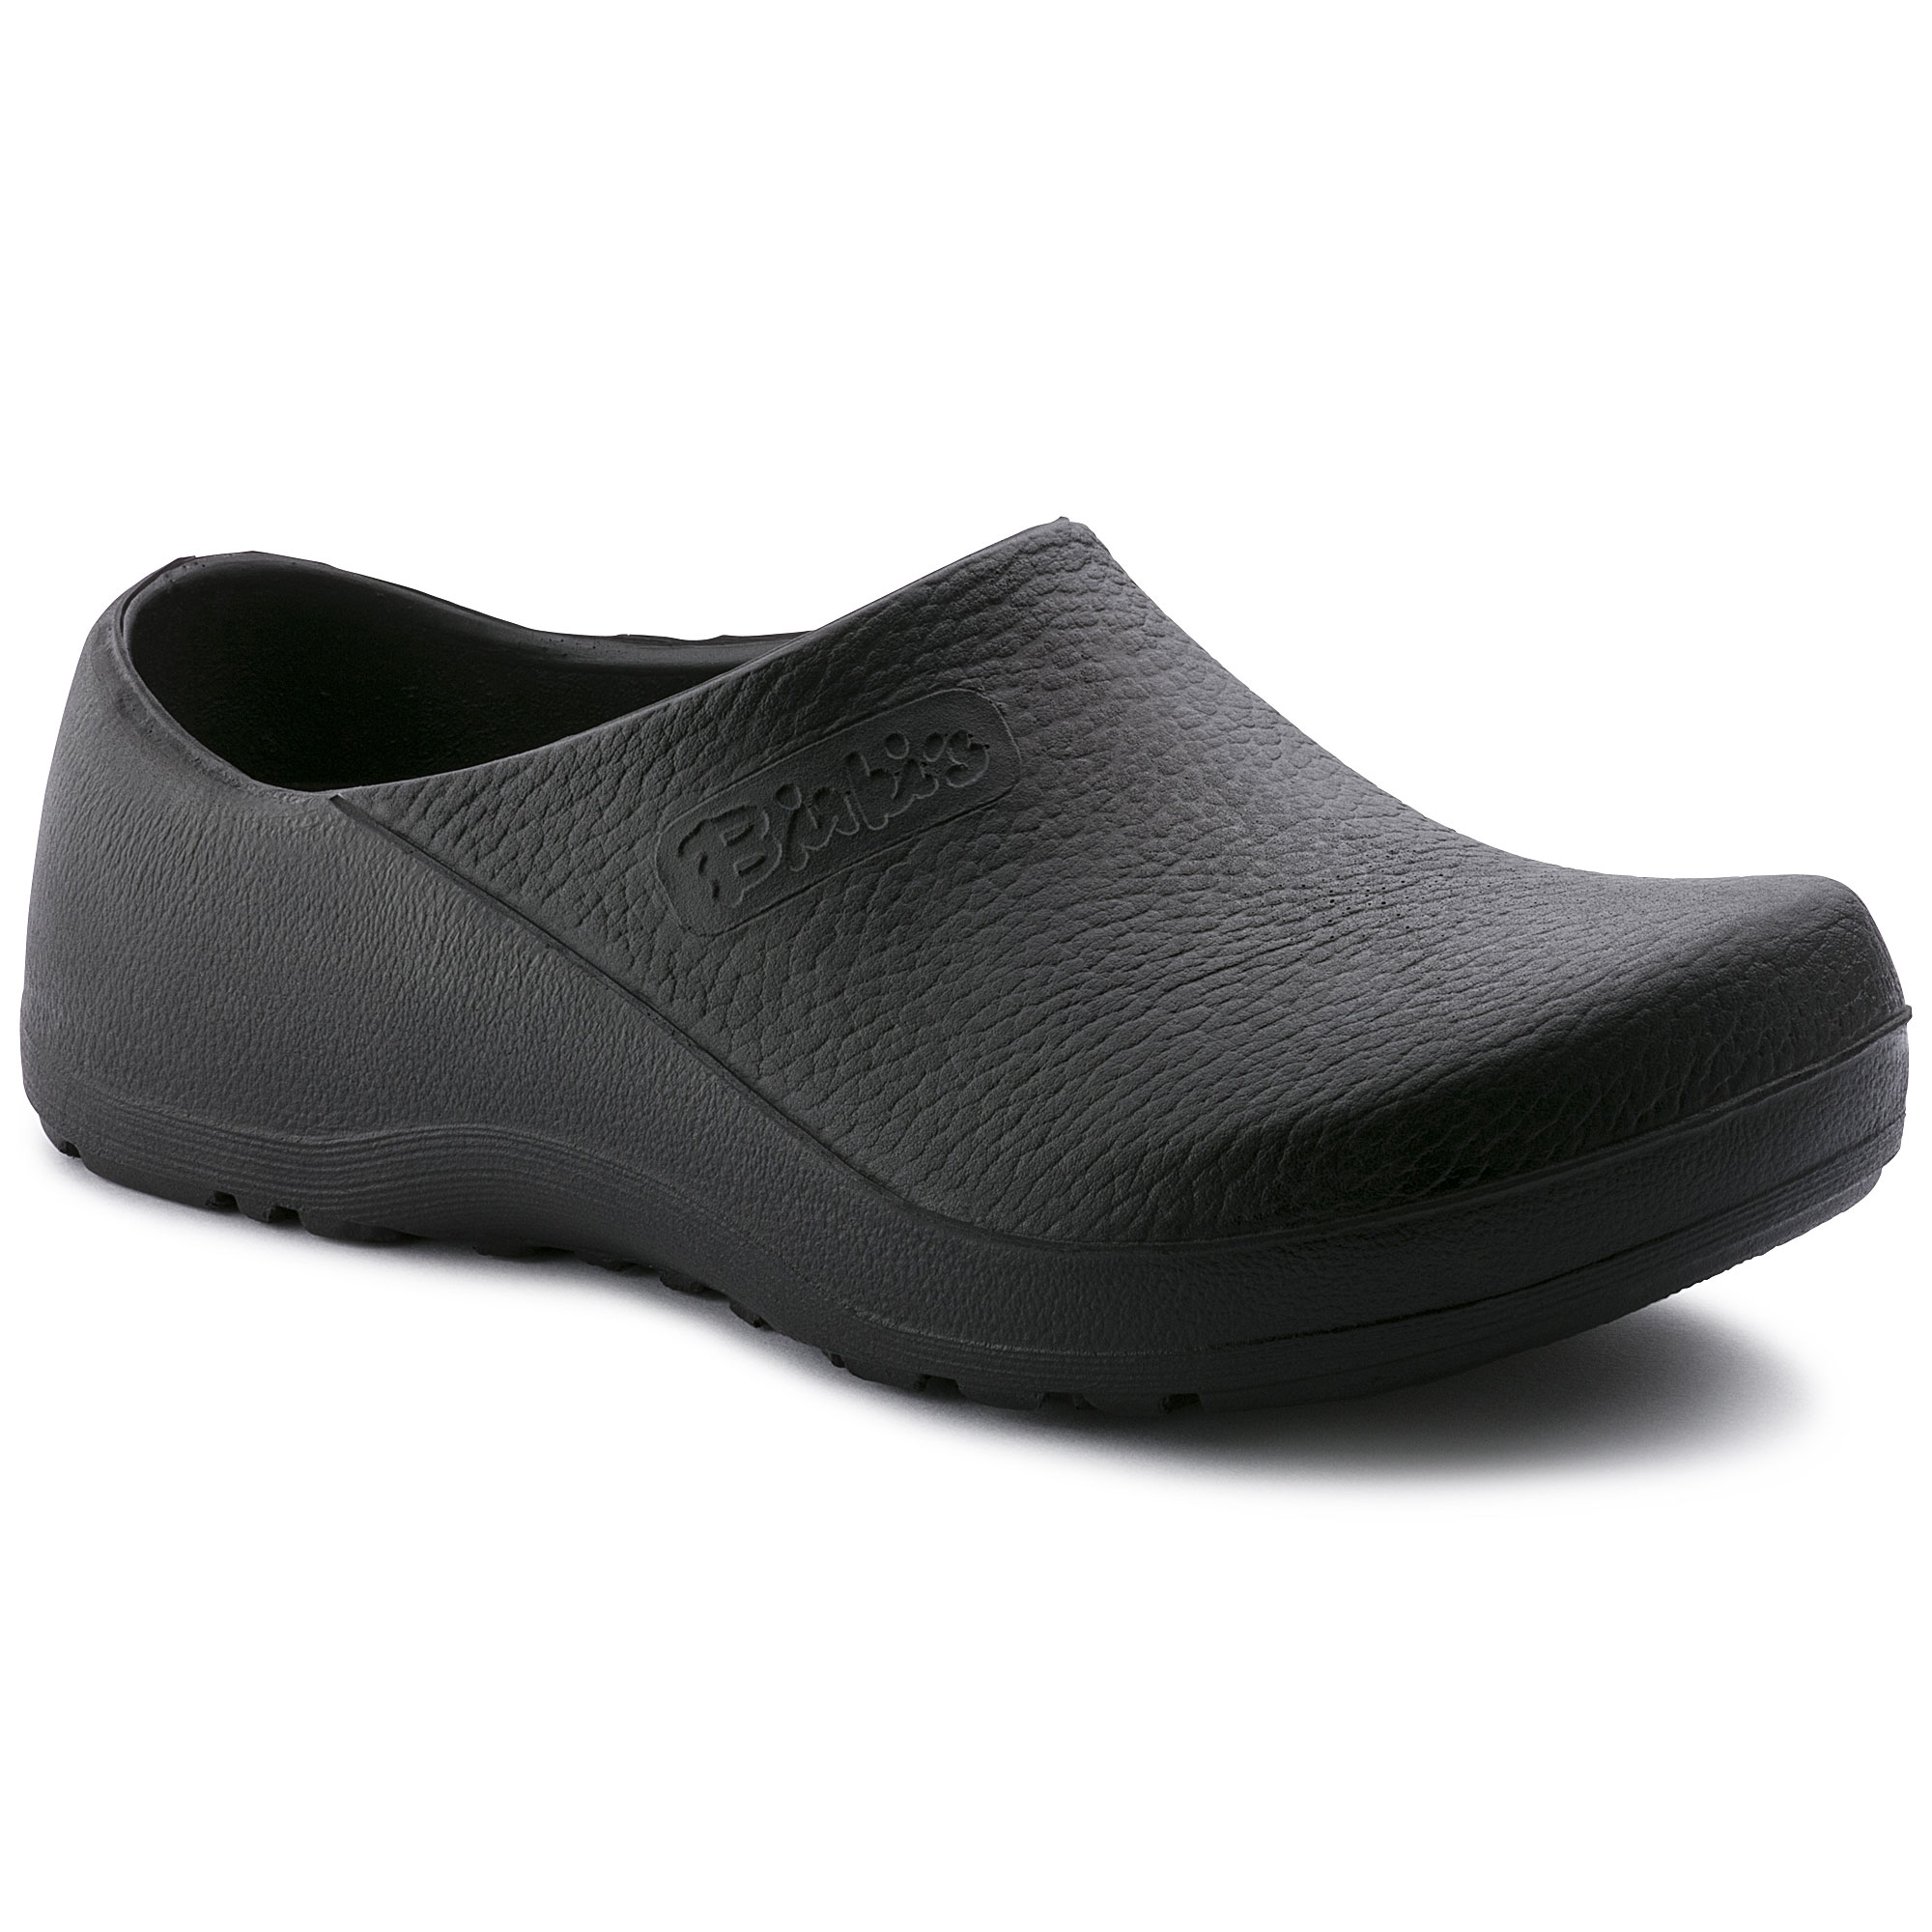 birkenstock slip resistant shoes